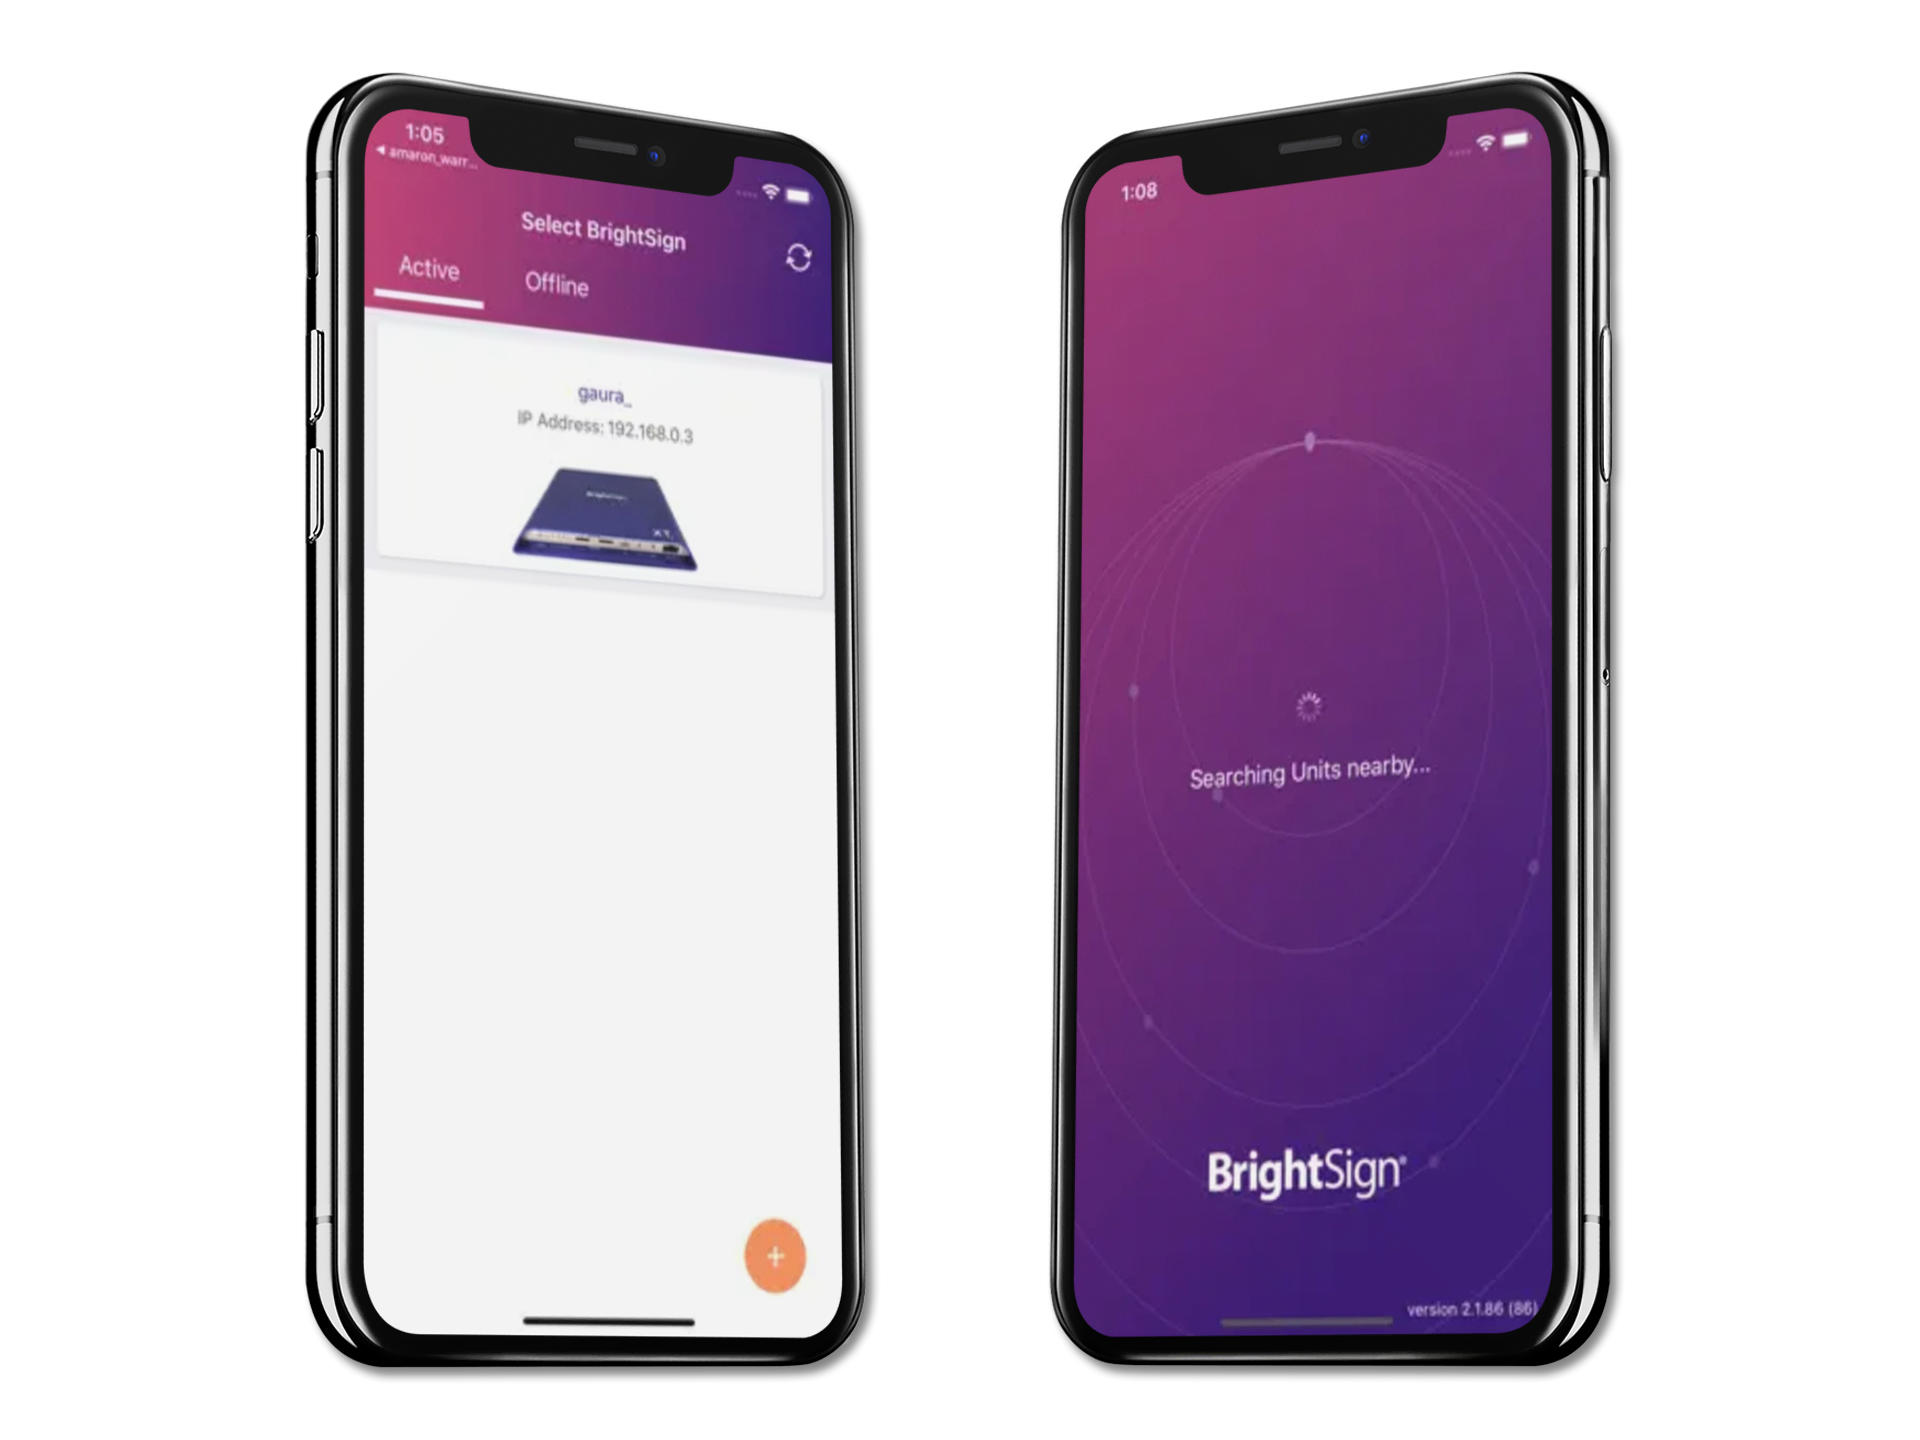 L'app BrightSign visualizzata su due telefoni iPhone X